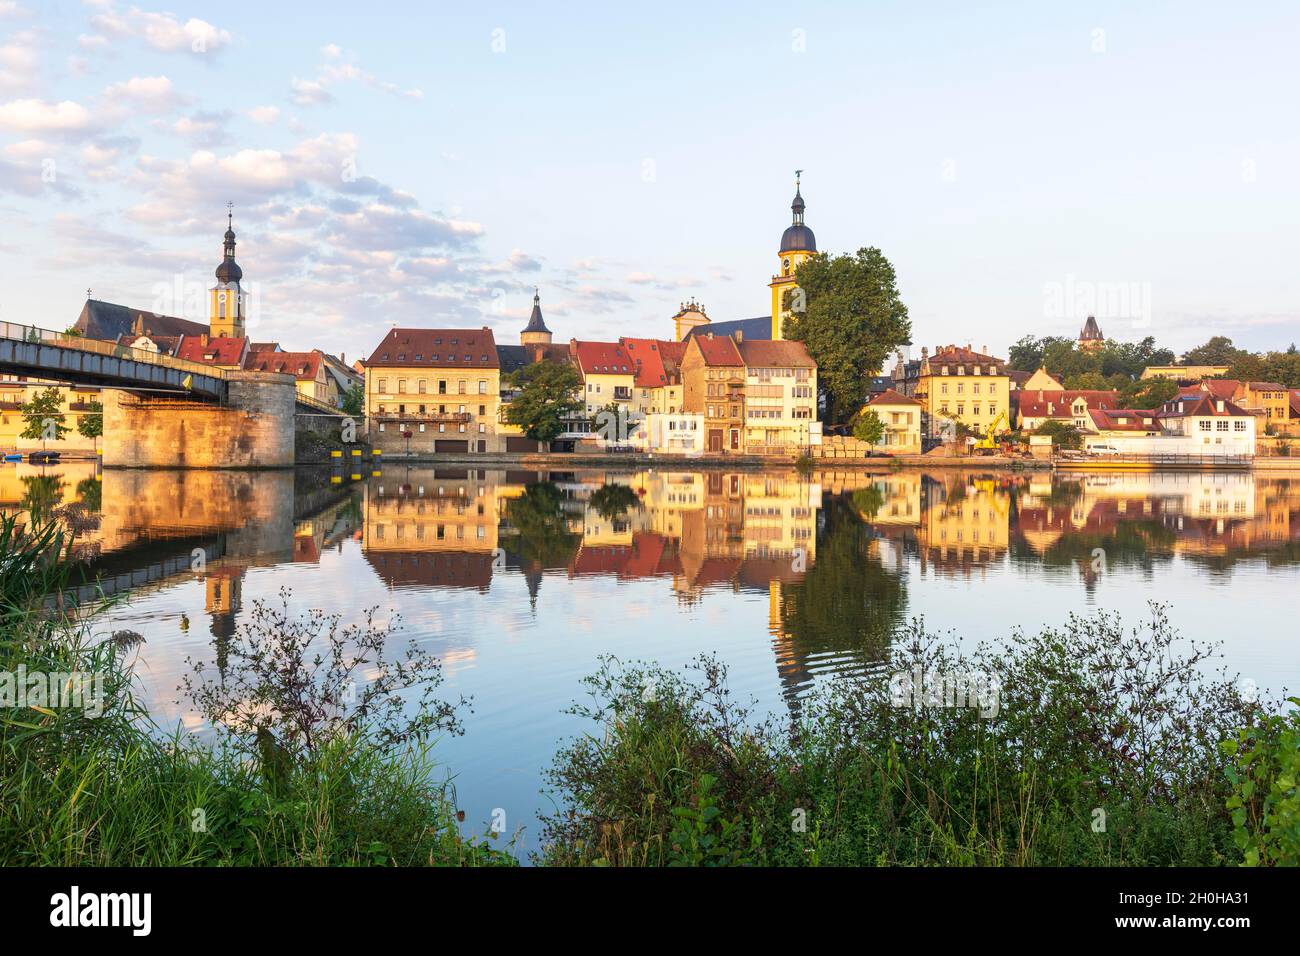 City view, Kitzingen, Main, Lower Franconia, Bavaria, Germany Stock Photo